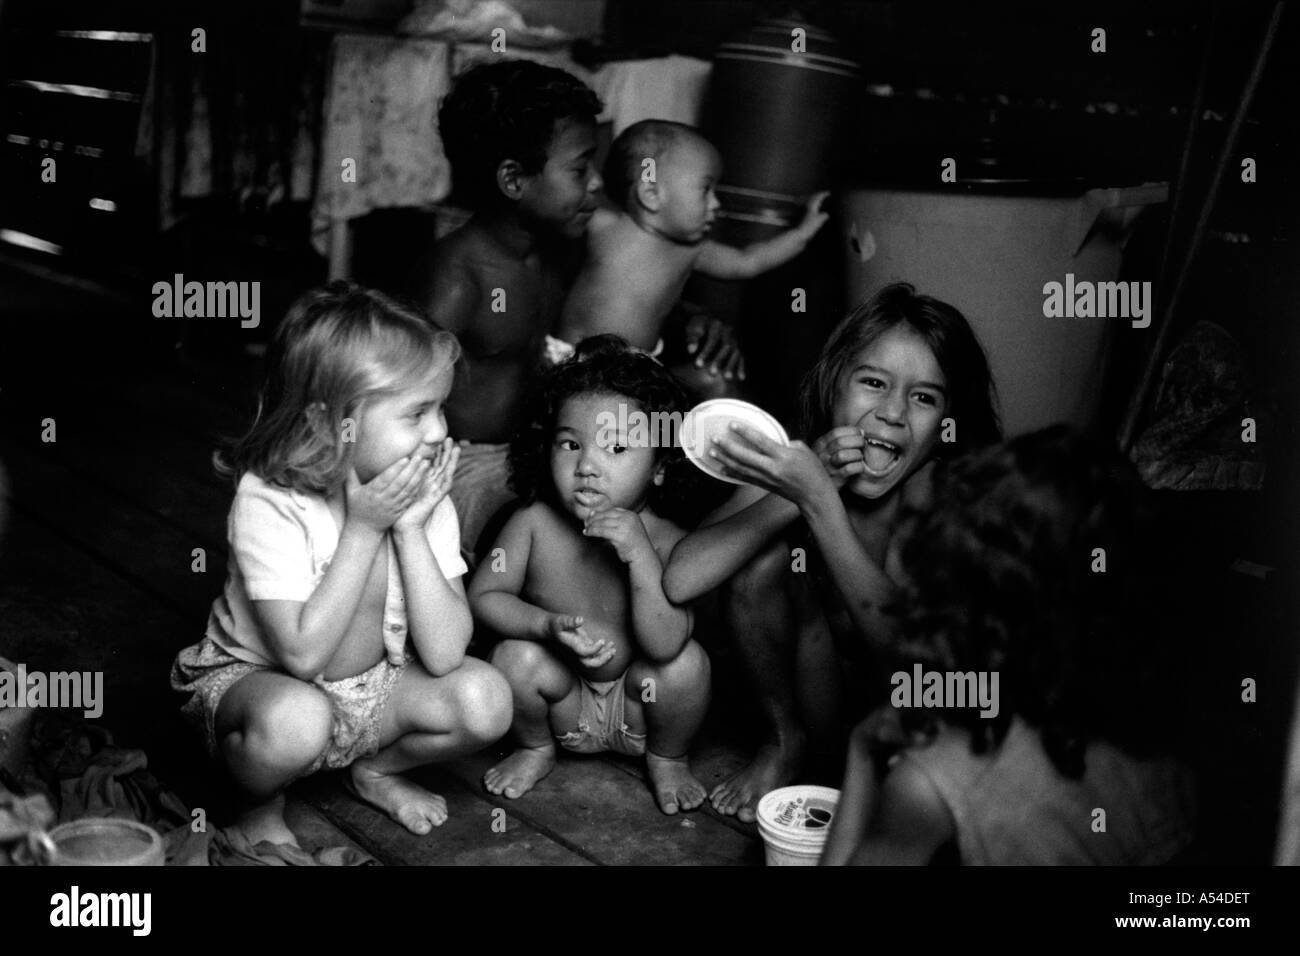 Painet hn1957 542 in bianco e nero bambini Sao Luis in Brasile paese nazione in via di sviluppo meno sviluppati dal punto di vista economico la cultura Foto Stock